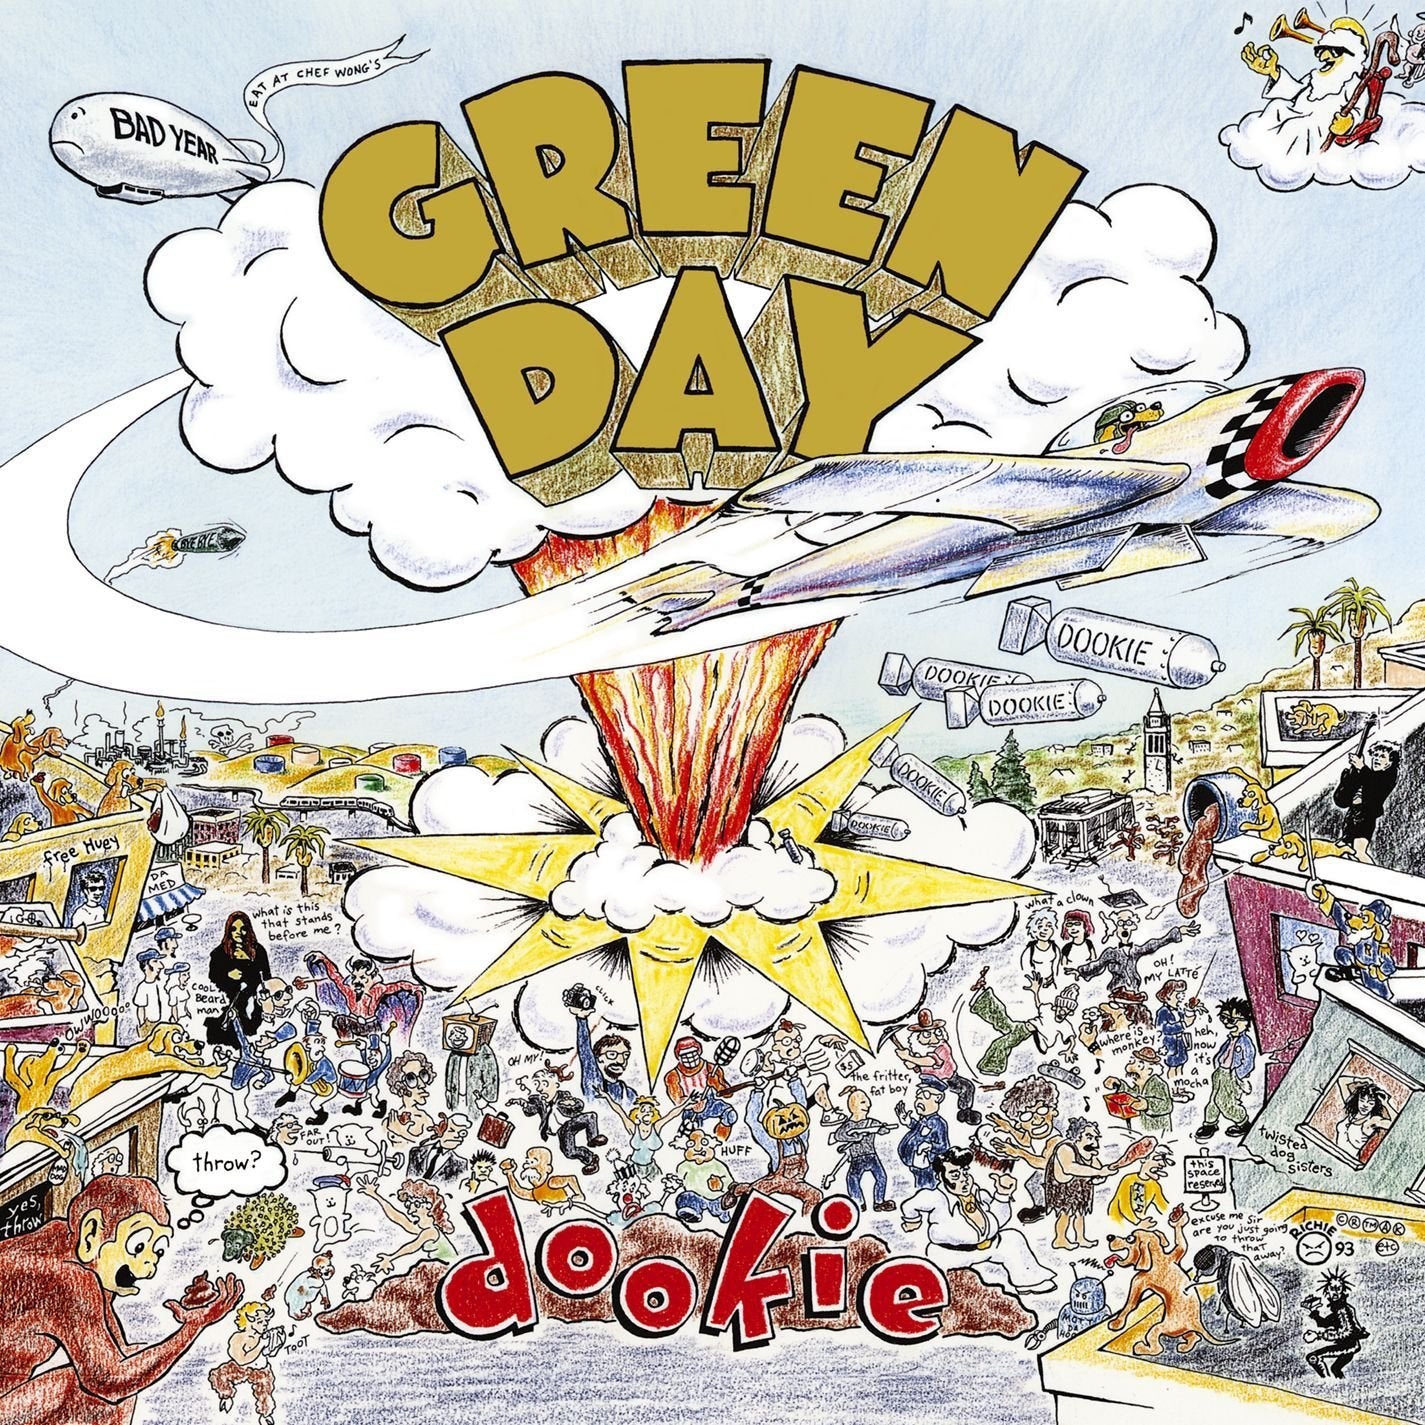 Green Day - Dookie Vinyl LP